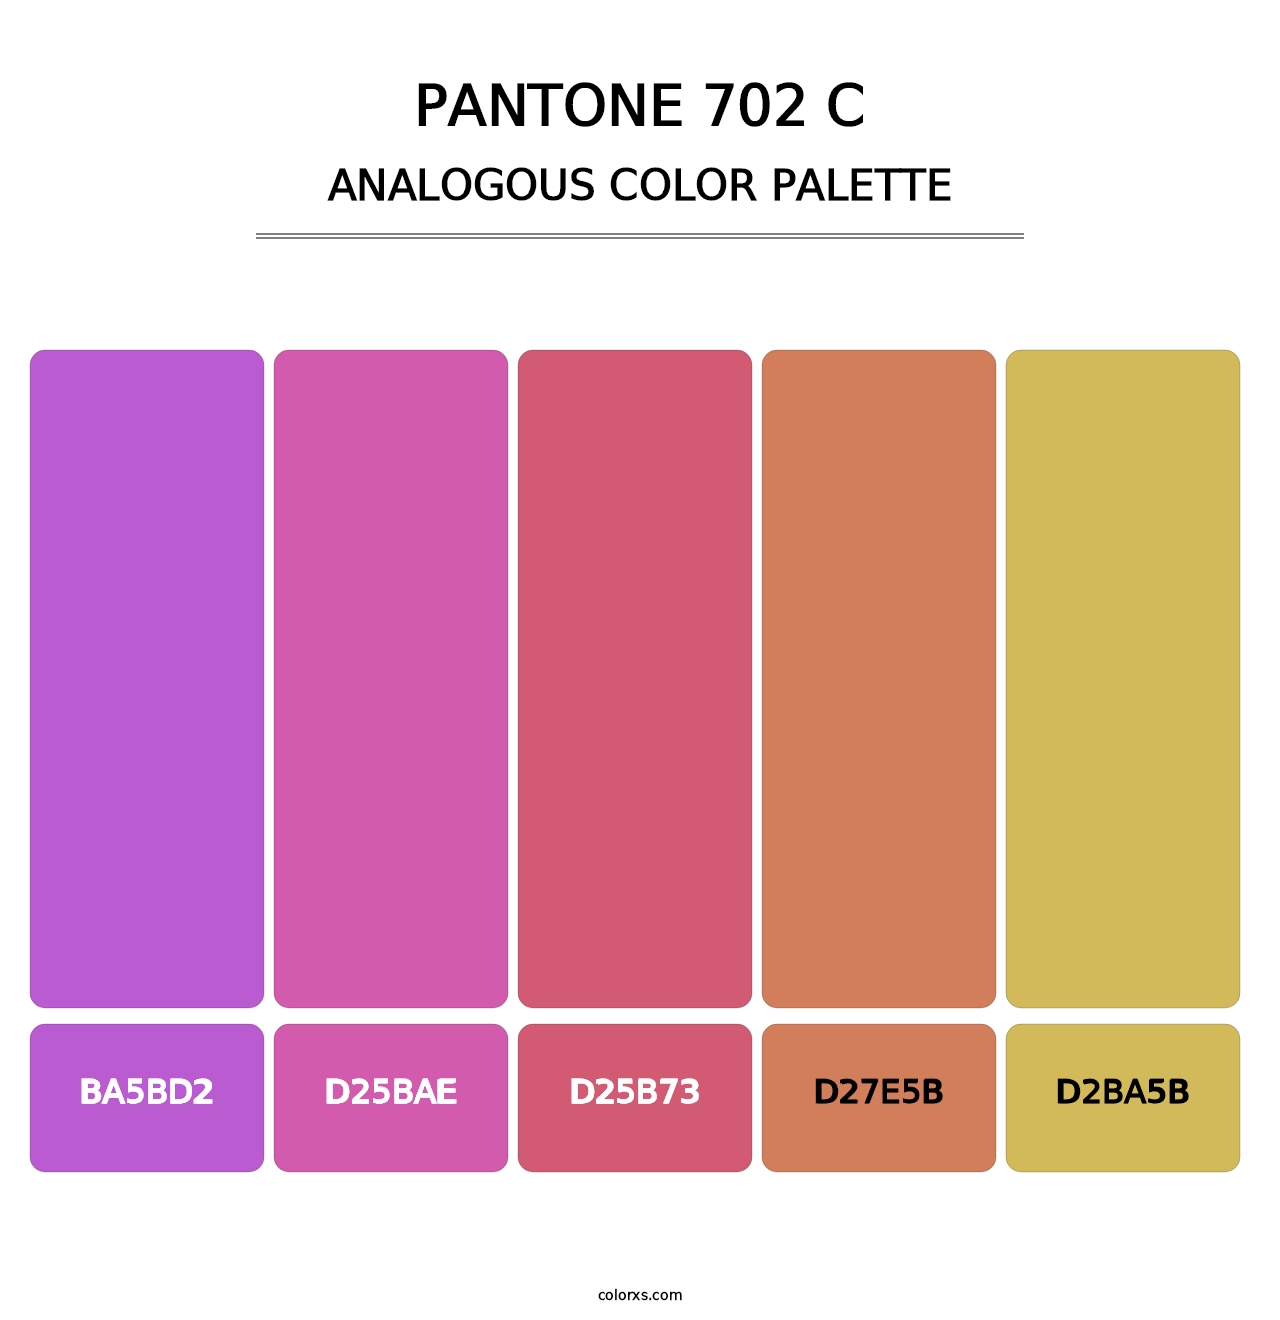 PANTONE 702 C - Analogous Color Palette